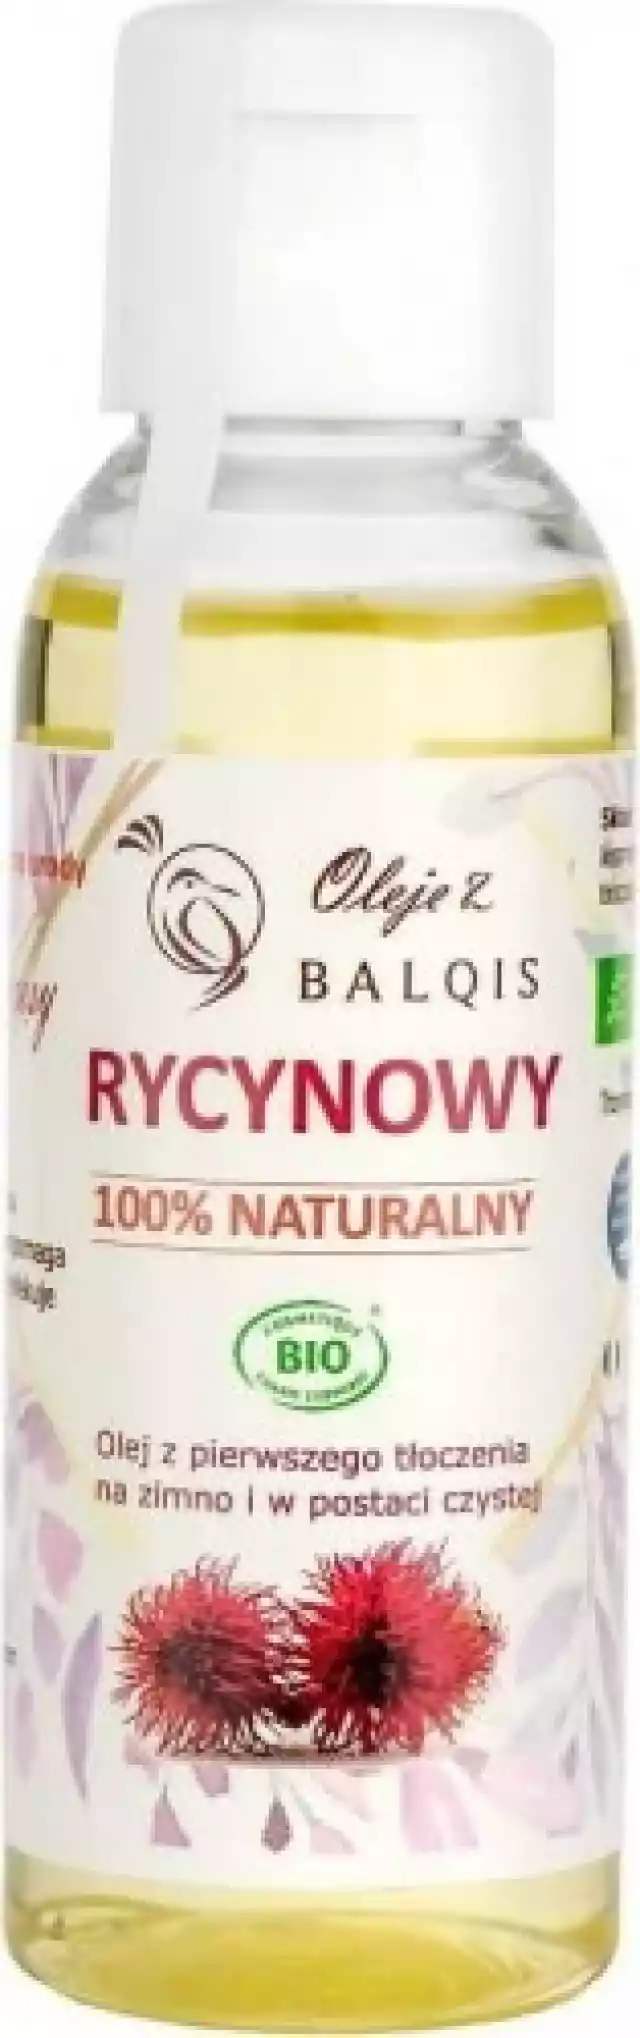 Olej Kosmetyczny Rycynowy Eco 50 Ml - Balqis